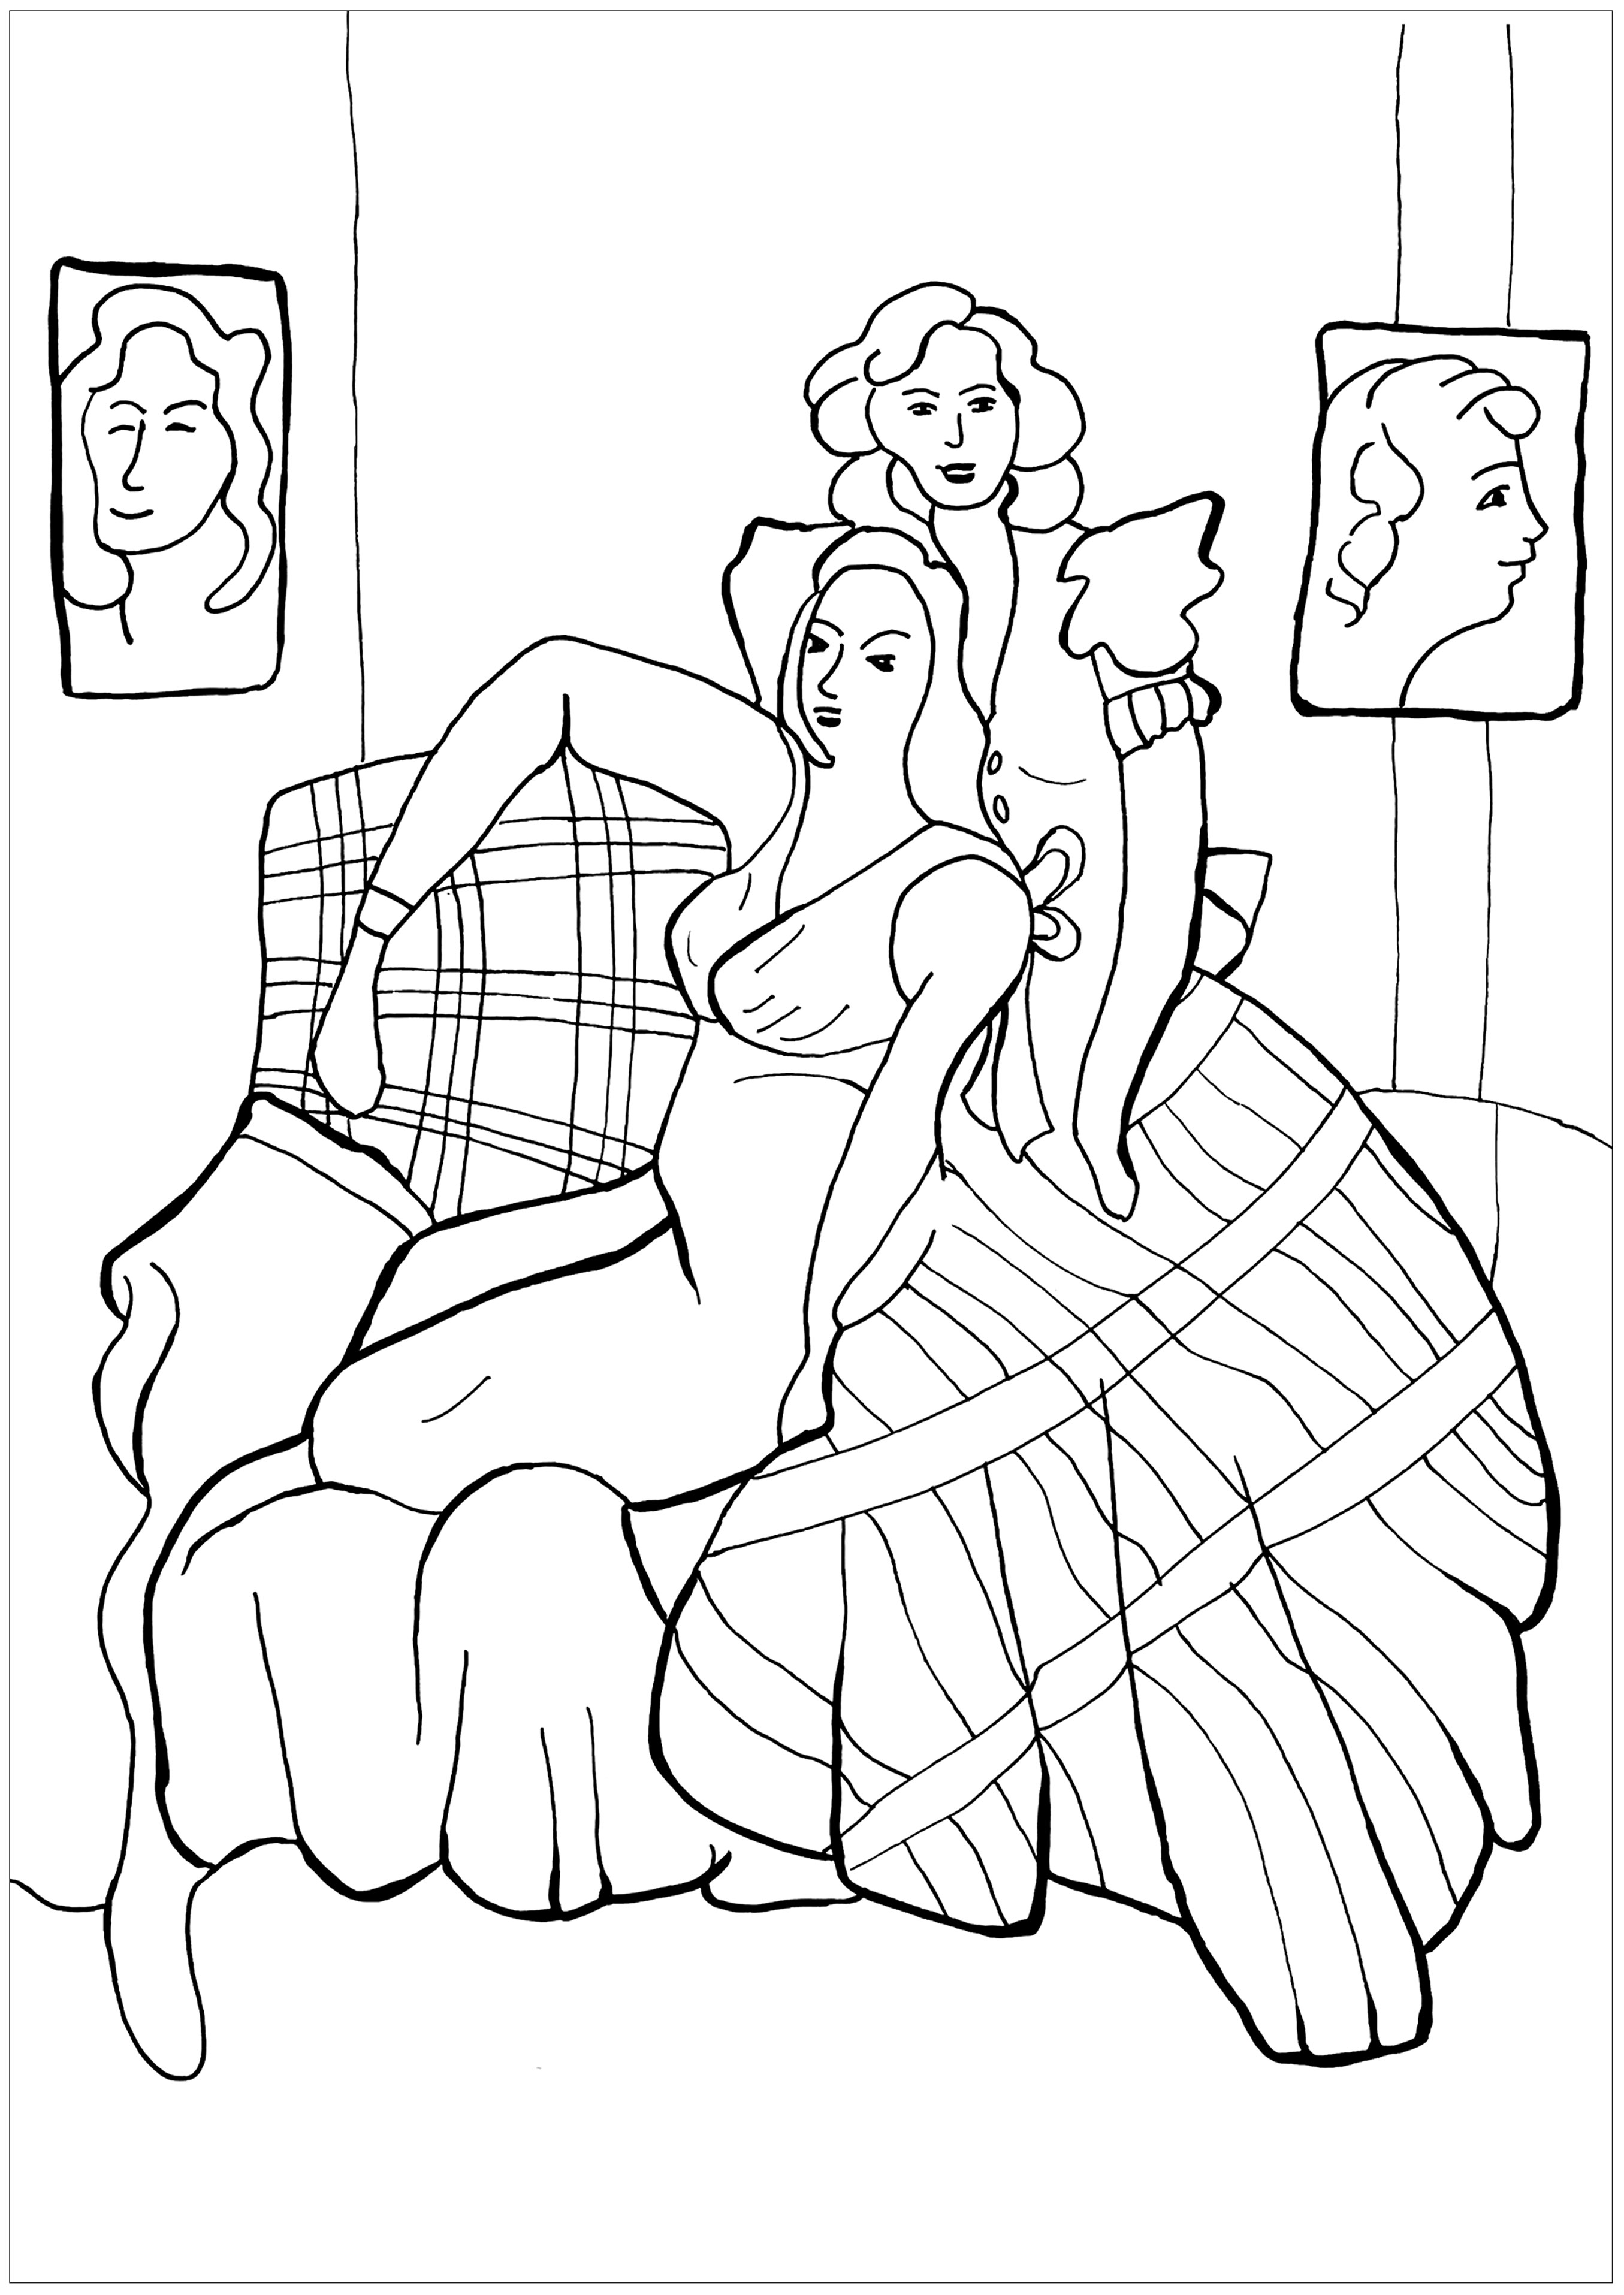 Malvorlage zum Gemälde 'Zwei junge Frauen, das gelbe Kleid und das schottische Kleid' (1941) von Henri Matisse.  Matisse wird oft als der bedeutendste französische Maler des 20. Jahrhunderts angesehen. Jahrhunderts. Als Meister der höchsten Dekoration und des ausdrucksstarken Einsatzes von Farben veränderte er mit seinen visionären Experimenten in verschiedenen Malstilen - von seinen impressionistischen häuslichen und figurativen Motiven bis hin zu seinen abstrakten Ausschnitten - unsere Wahrnehmung der Welt.